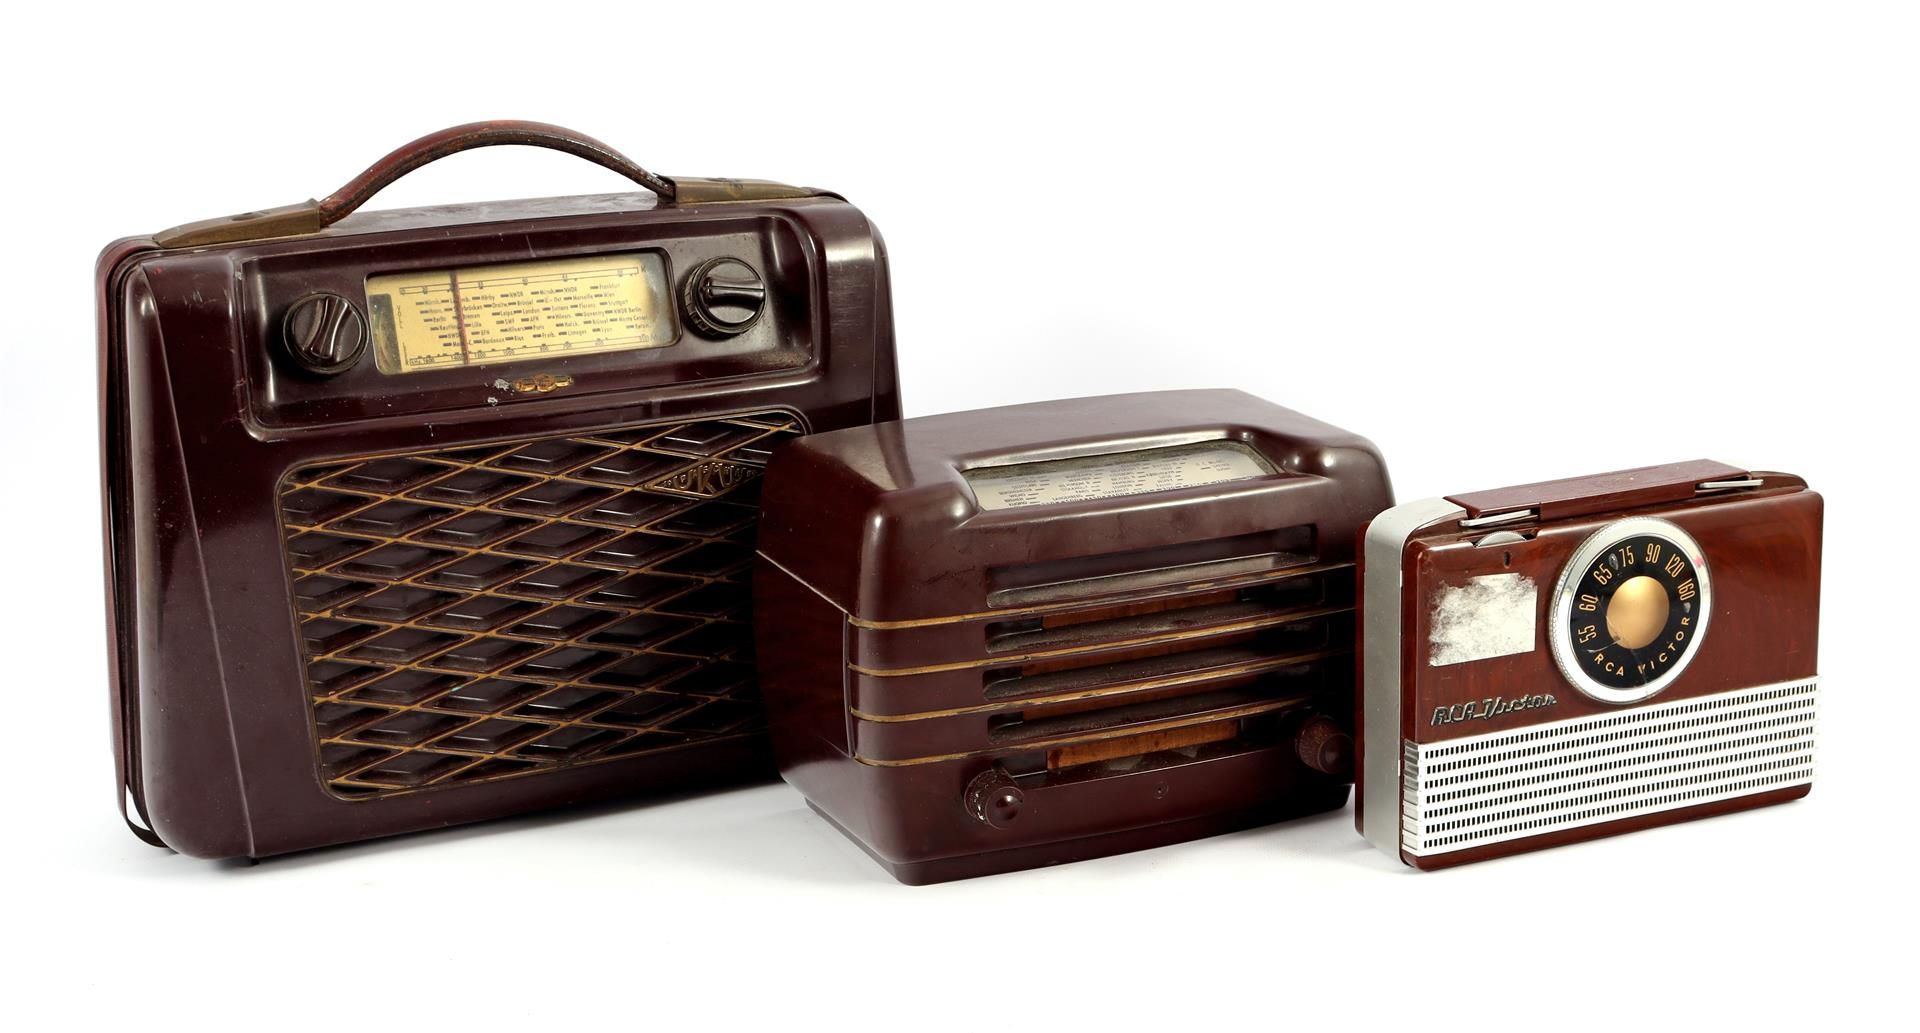 3 1950s / 60s radios